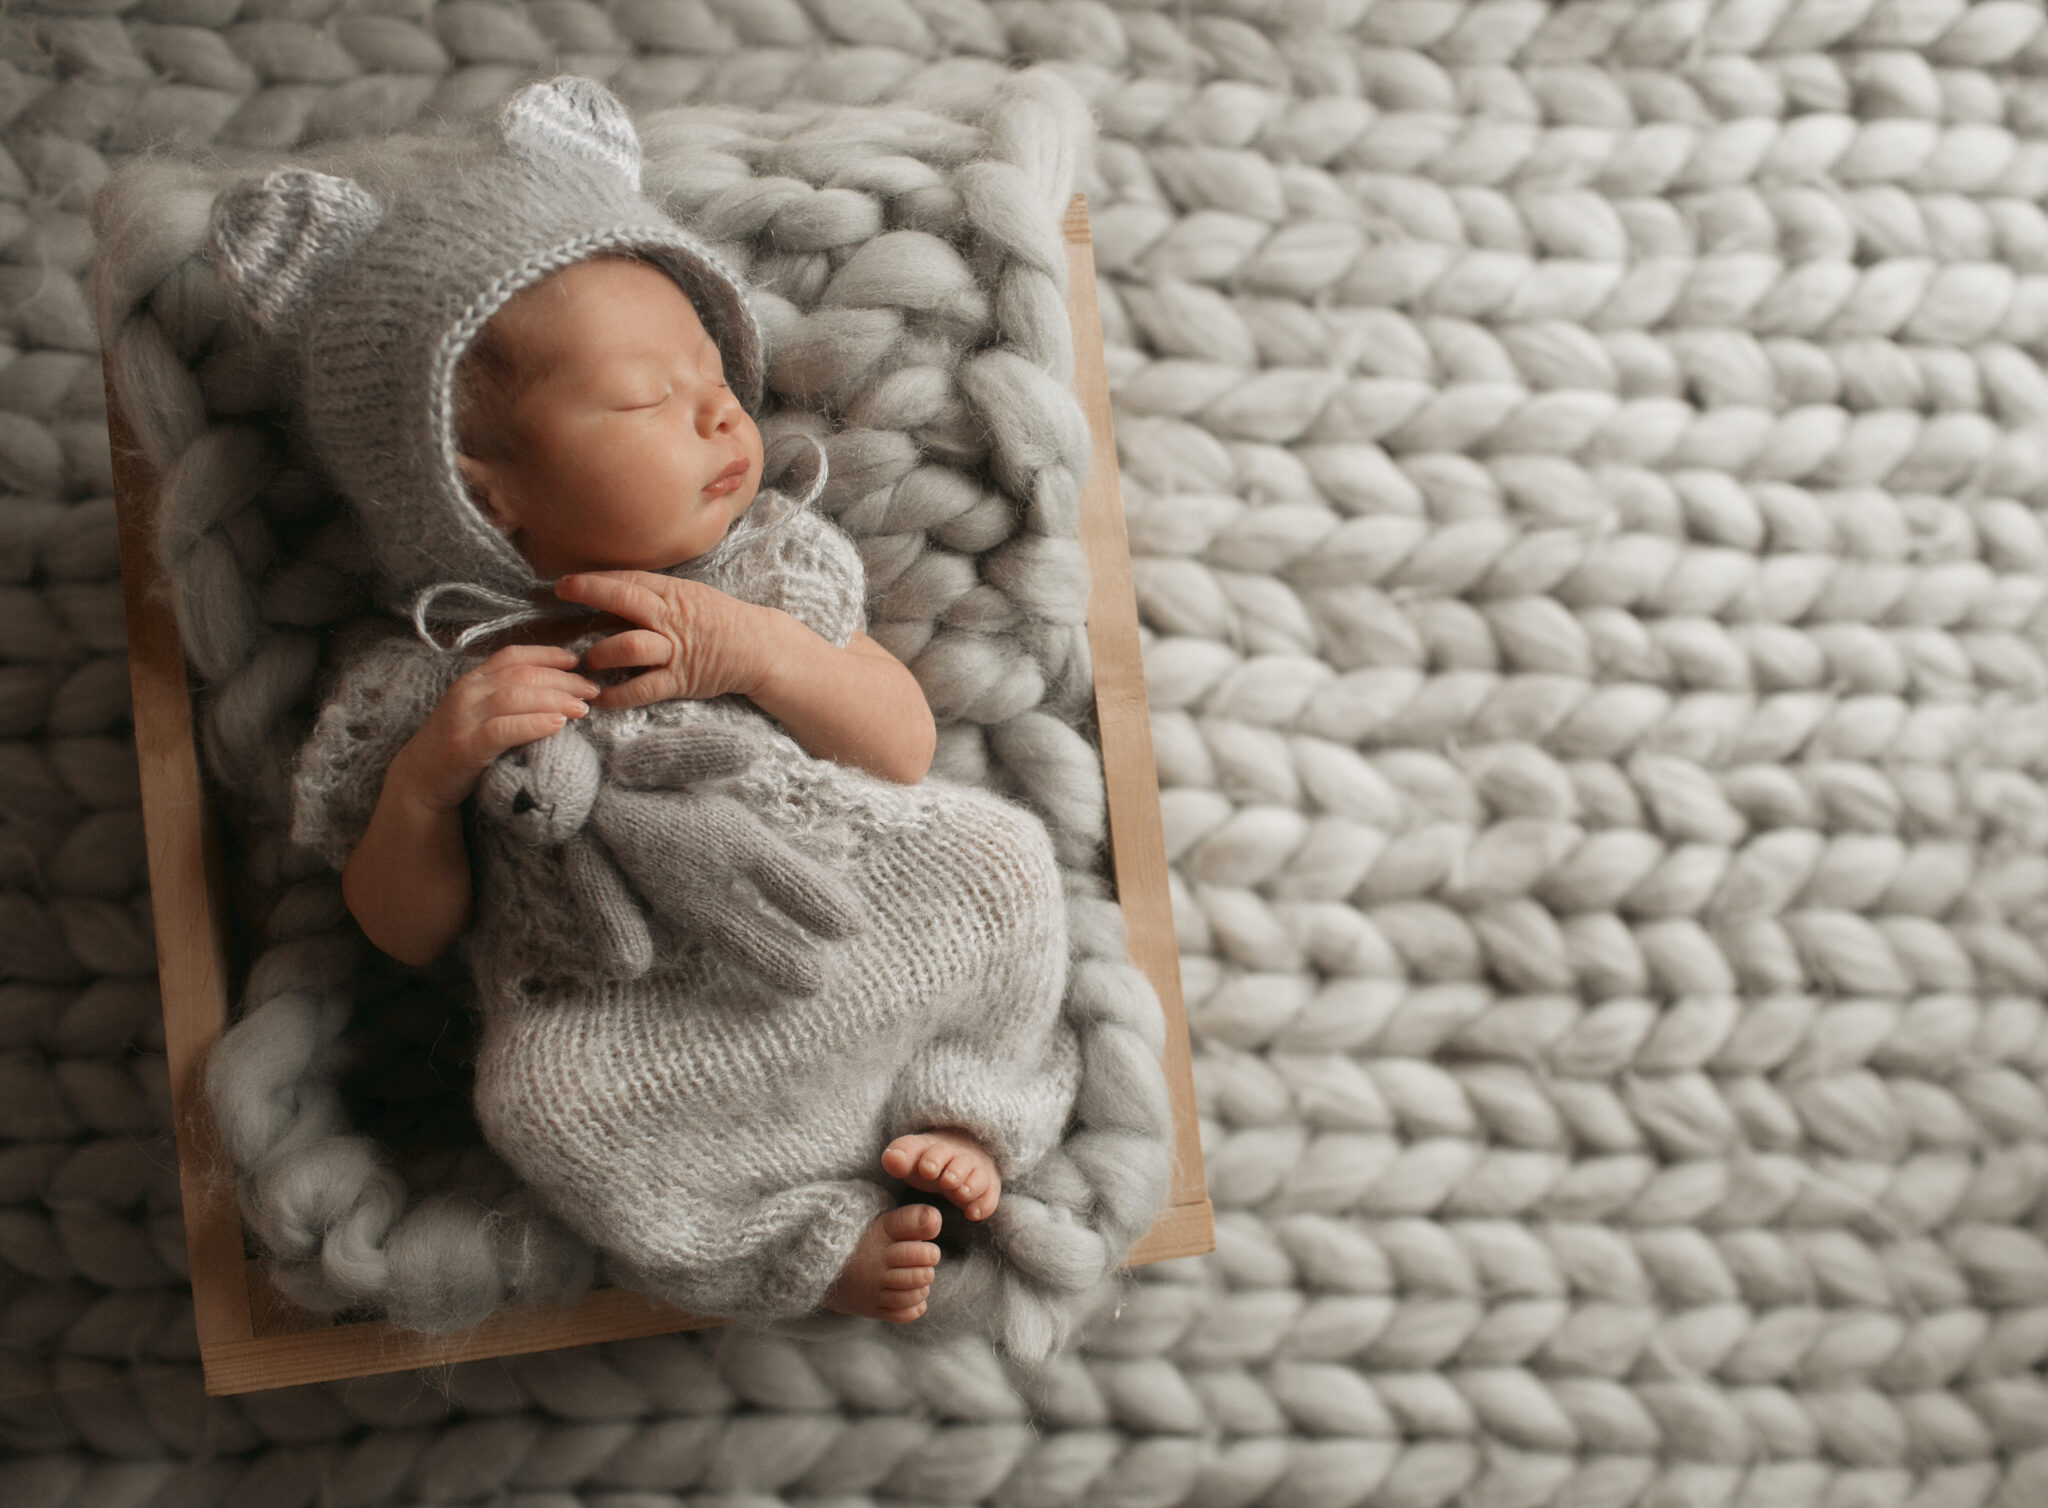 Newborn care guide, newborn tips and tricks